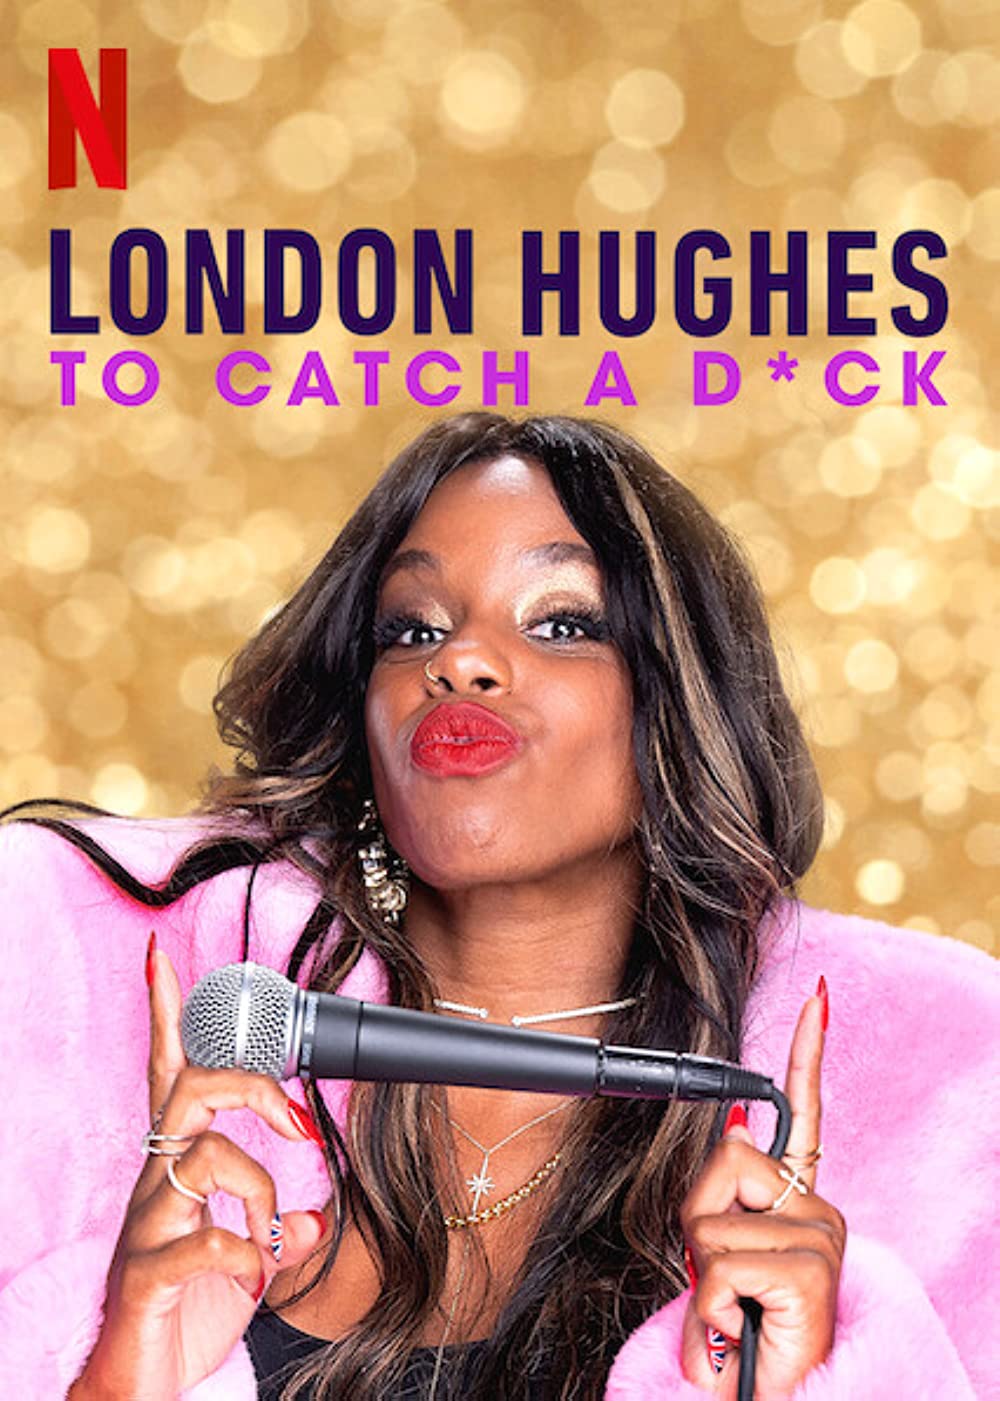 Filmbeschreibung zu London Hughes: To Catch a D**k